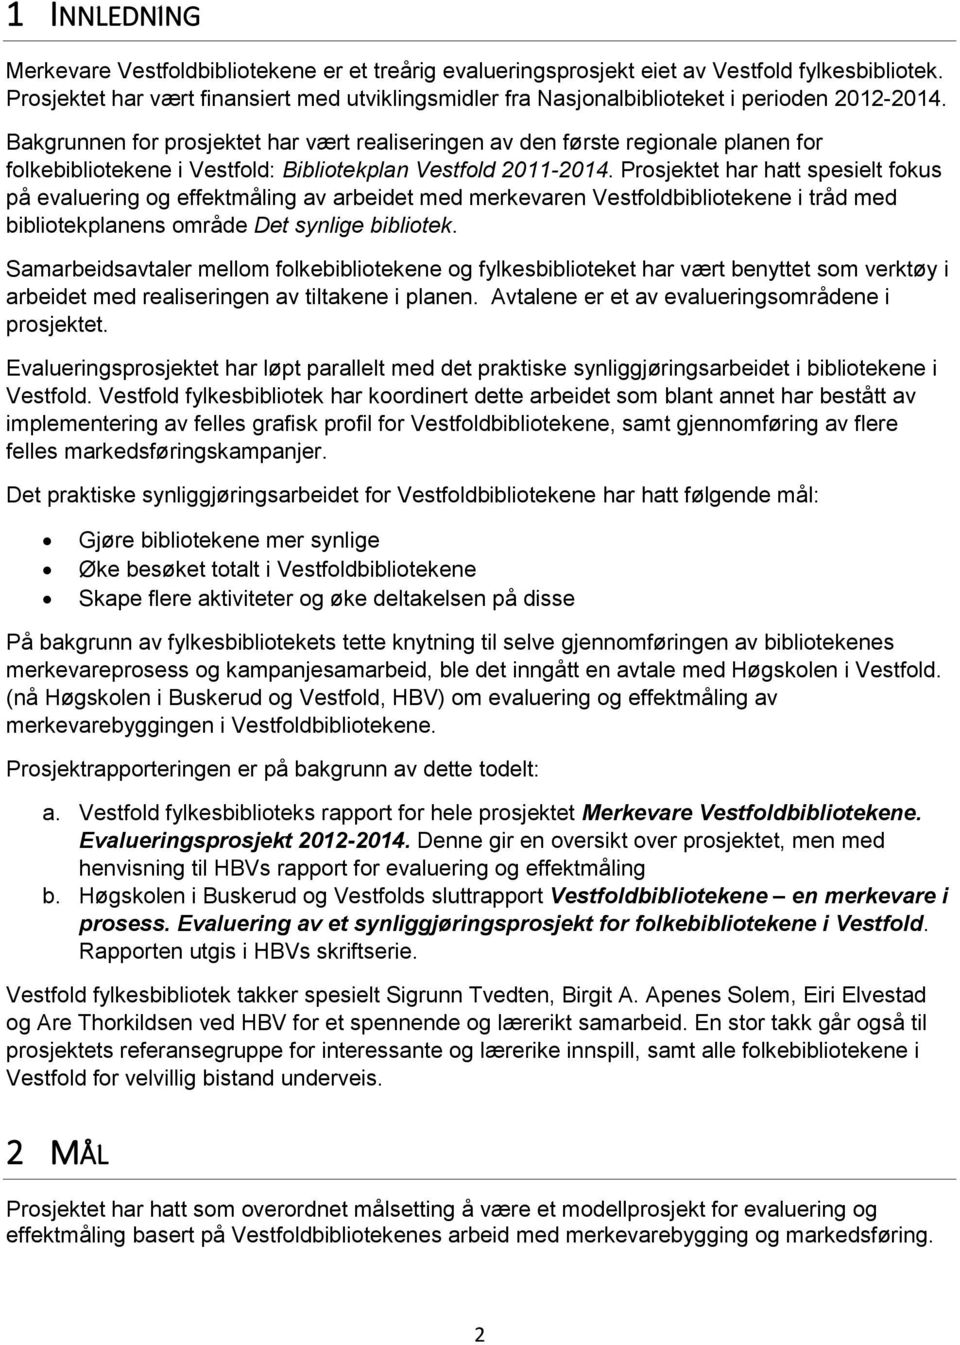 Bakgrunnen for prosjektet har vært realiseringen av den første regionale planen for folkebibliotekene i Vestfold: Bibliotekplan Vestfold 2011-2014.